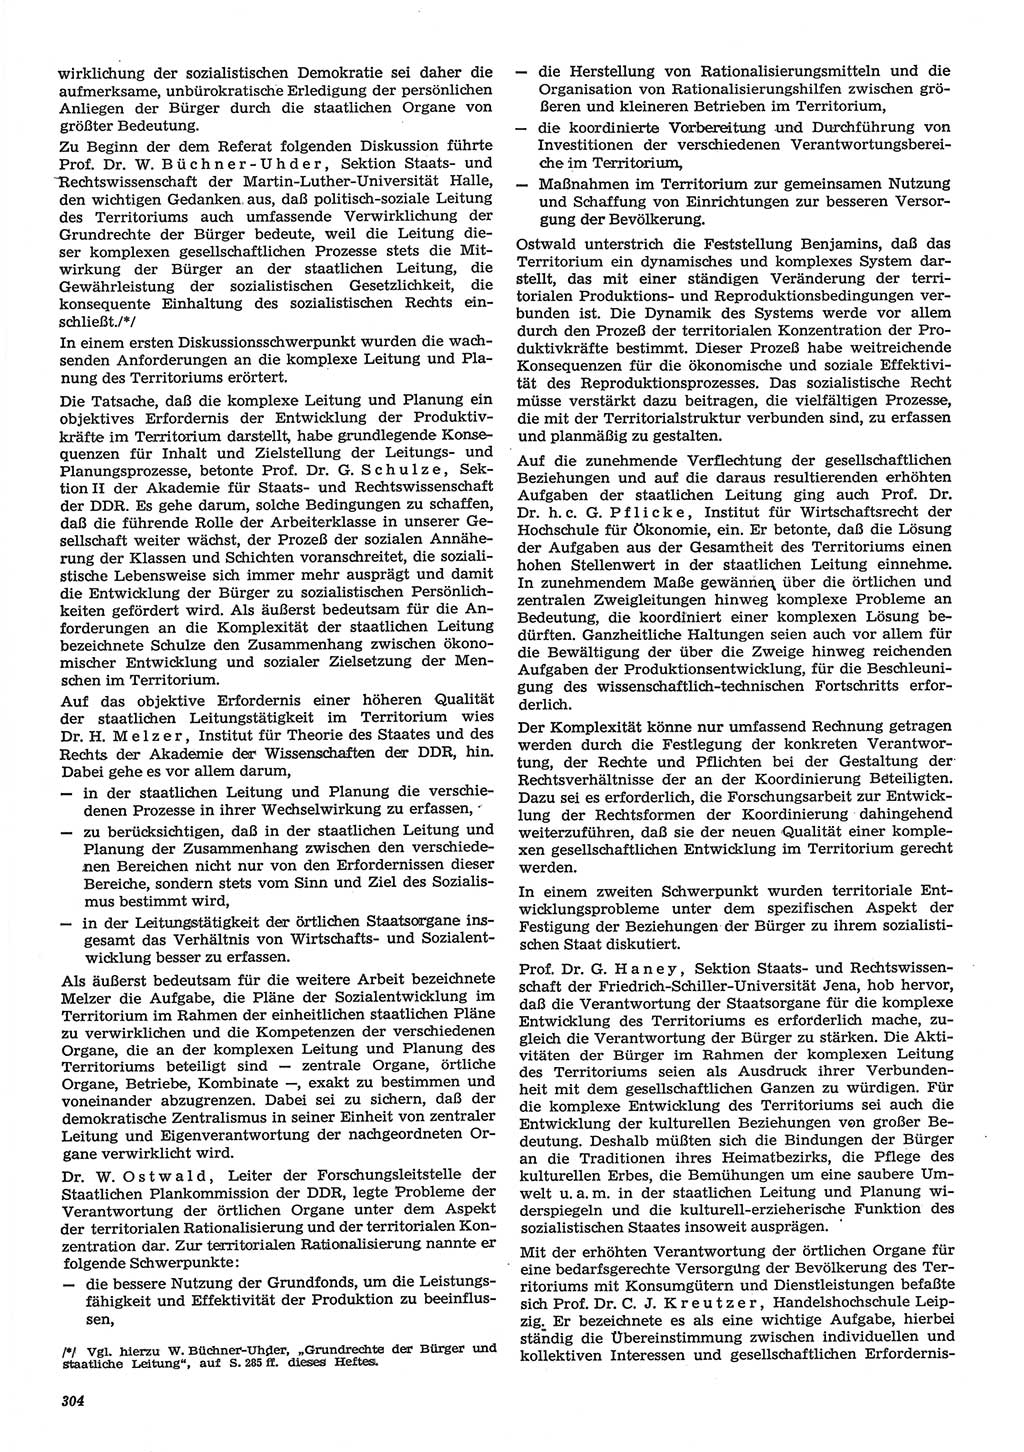 Neue Justiz (NJ), Zeitschrift für Recht und Rechtswissenschaft-Zeitschrift, sozialistisches Recht und Gesetzlichkeit, 31. Jahrgang 1977, Seite 304 (NJ DDR 1977, S. 304)